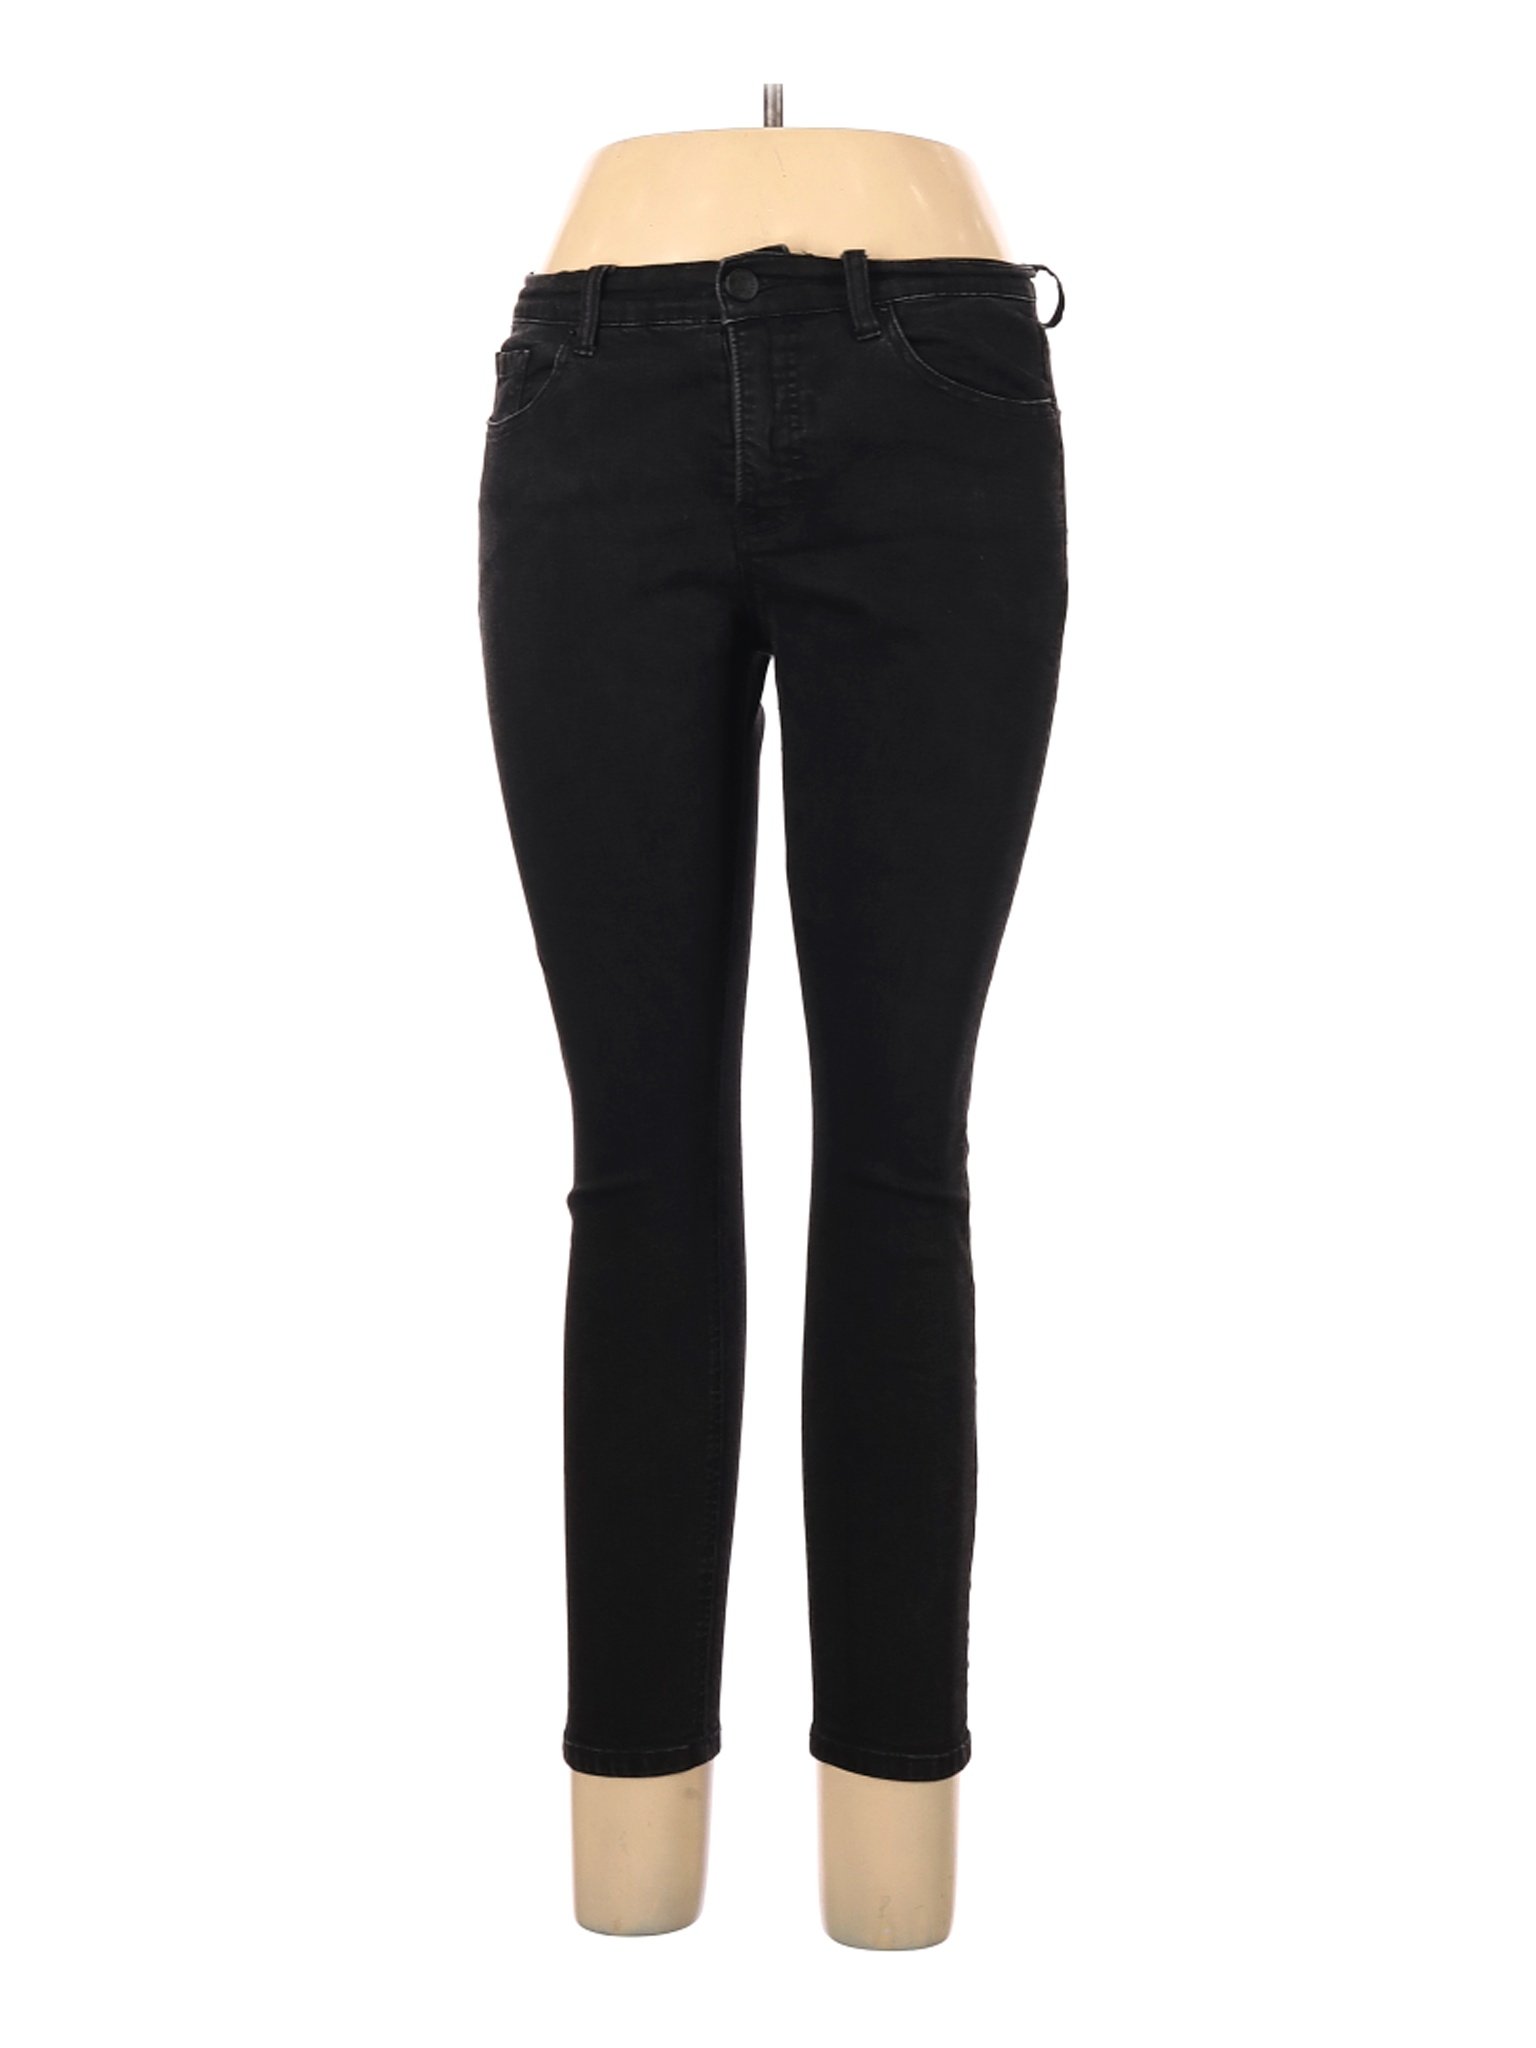 BDG Women Black Jeans 31W | eBay